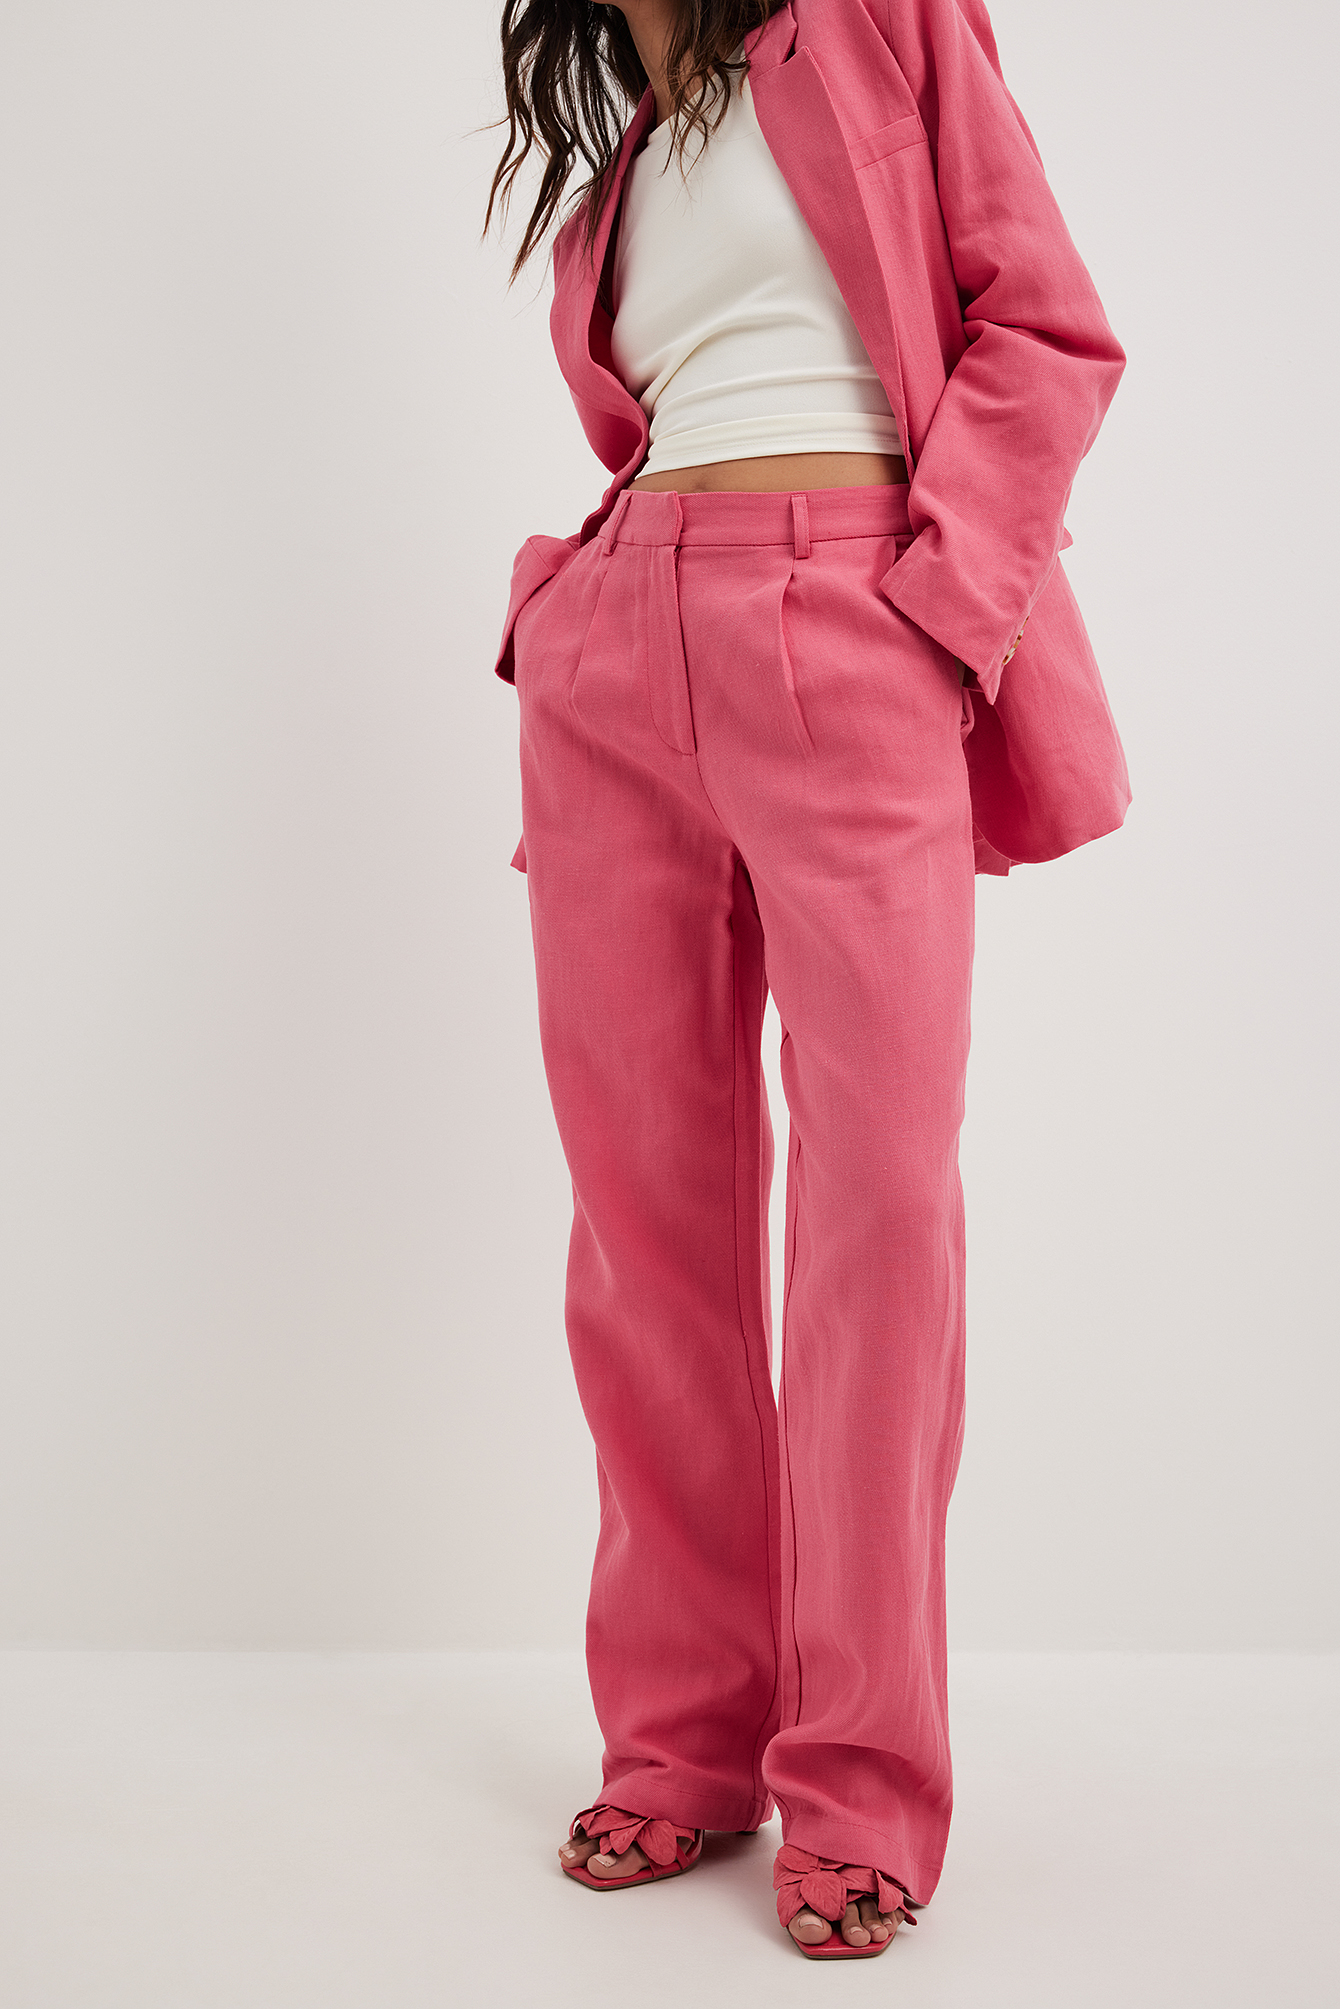 Buy best ladies magenta pink cotton pants for sale in India | Priya  Chaudhary